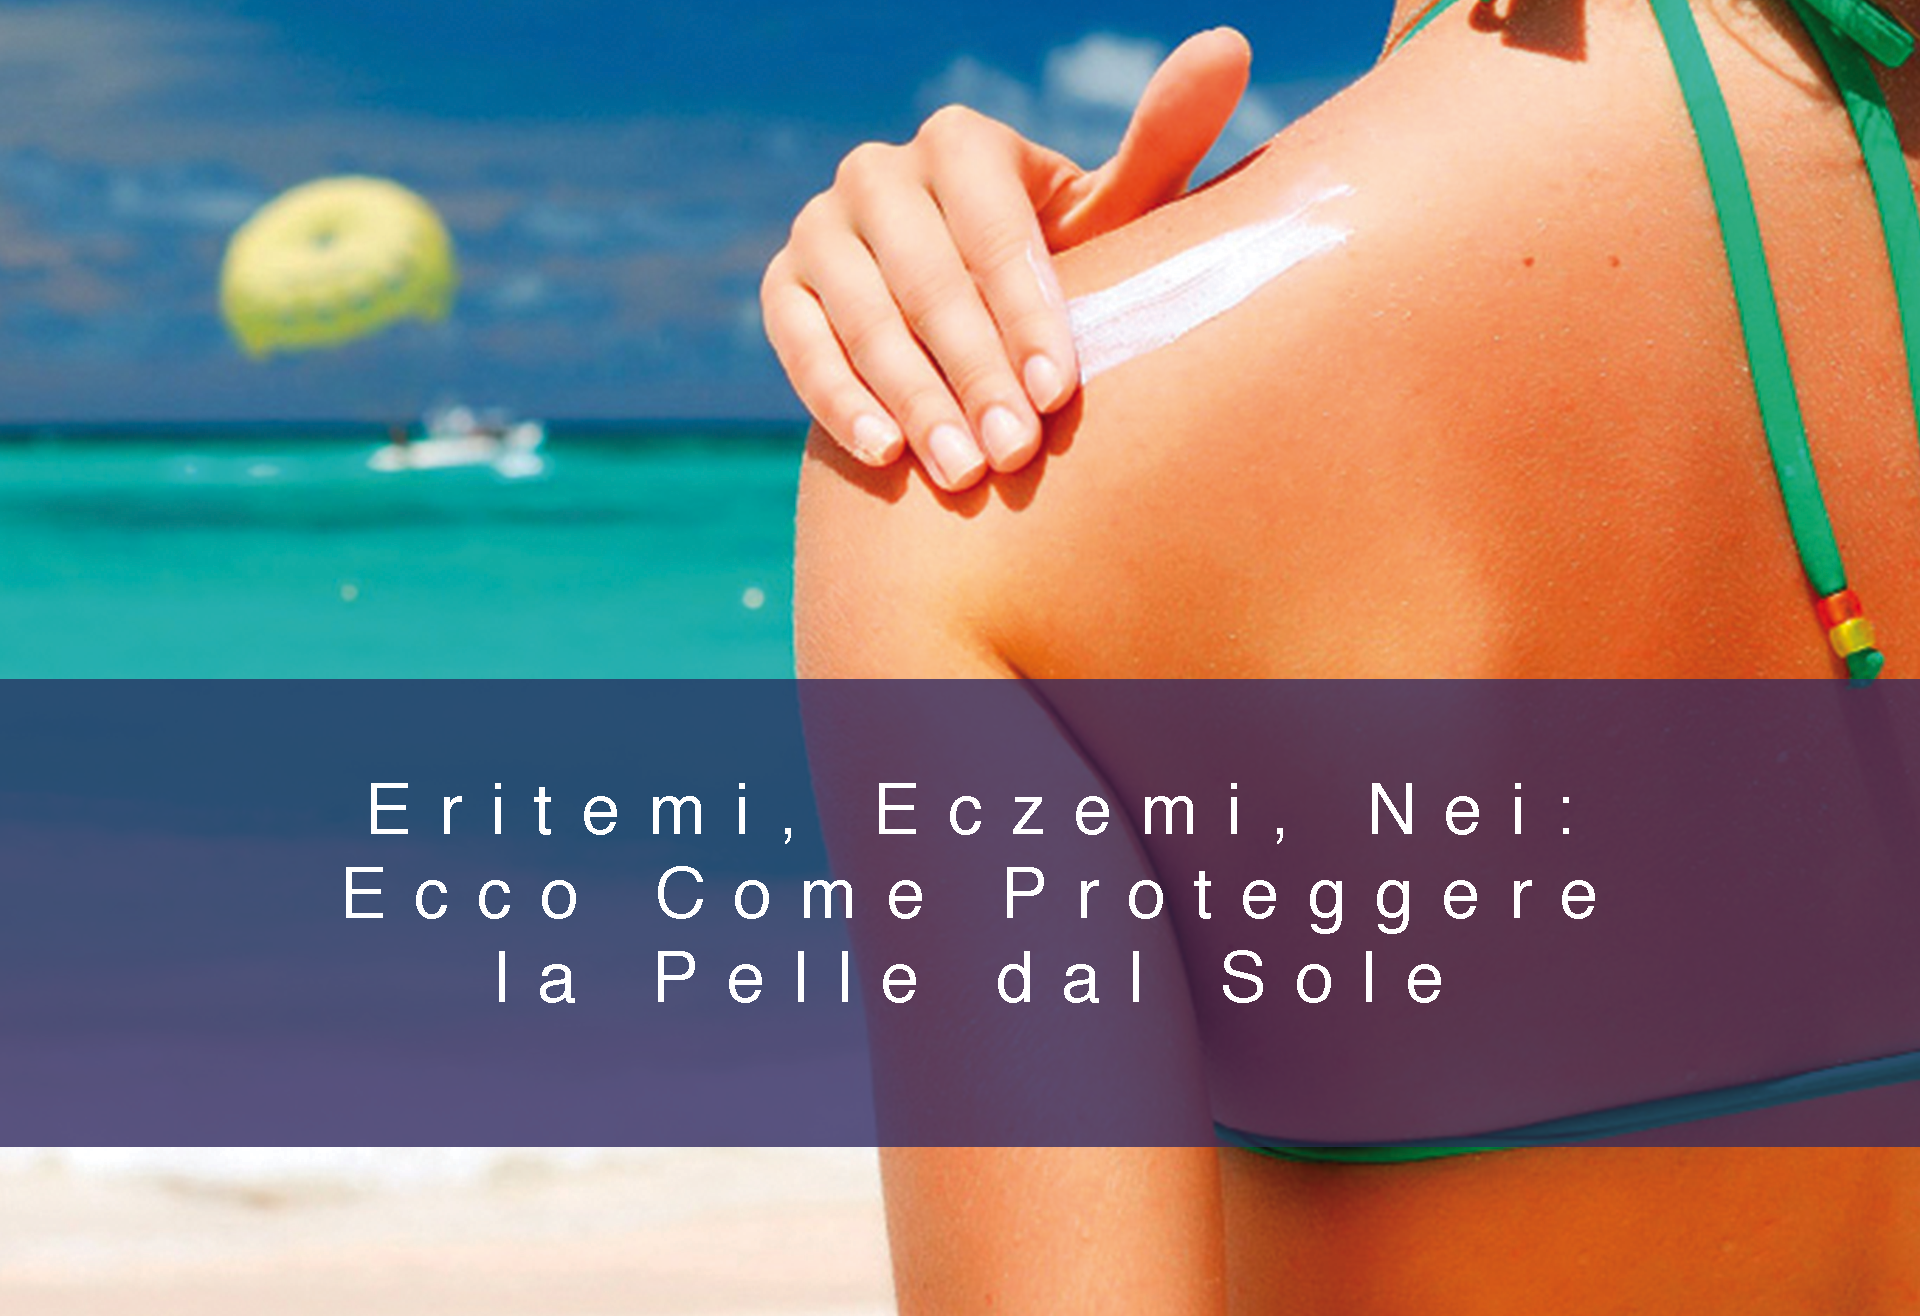 Eritemi, Eczemi, Nei: Ecco Come Proteggere la Pelle dal Sole